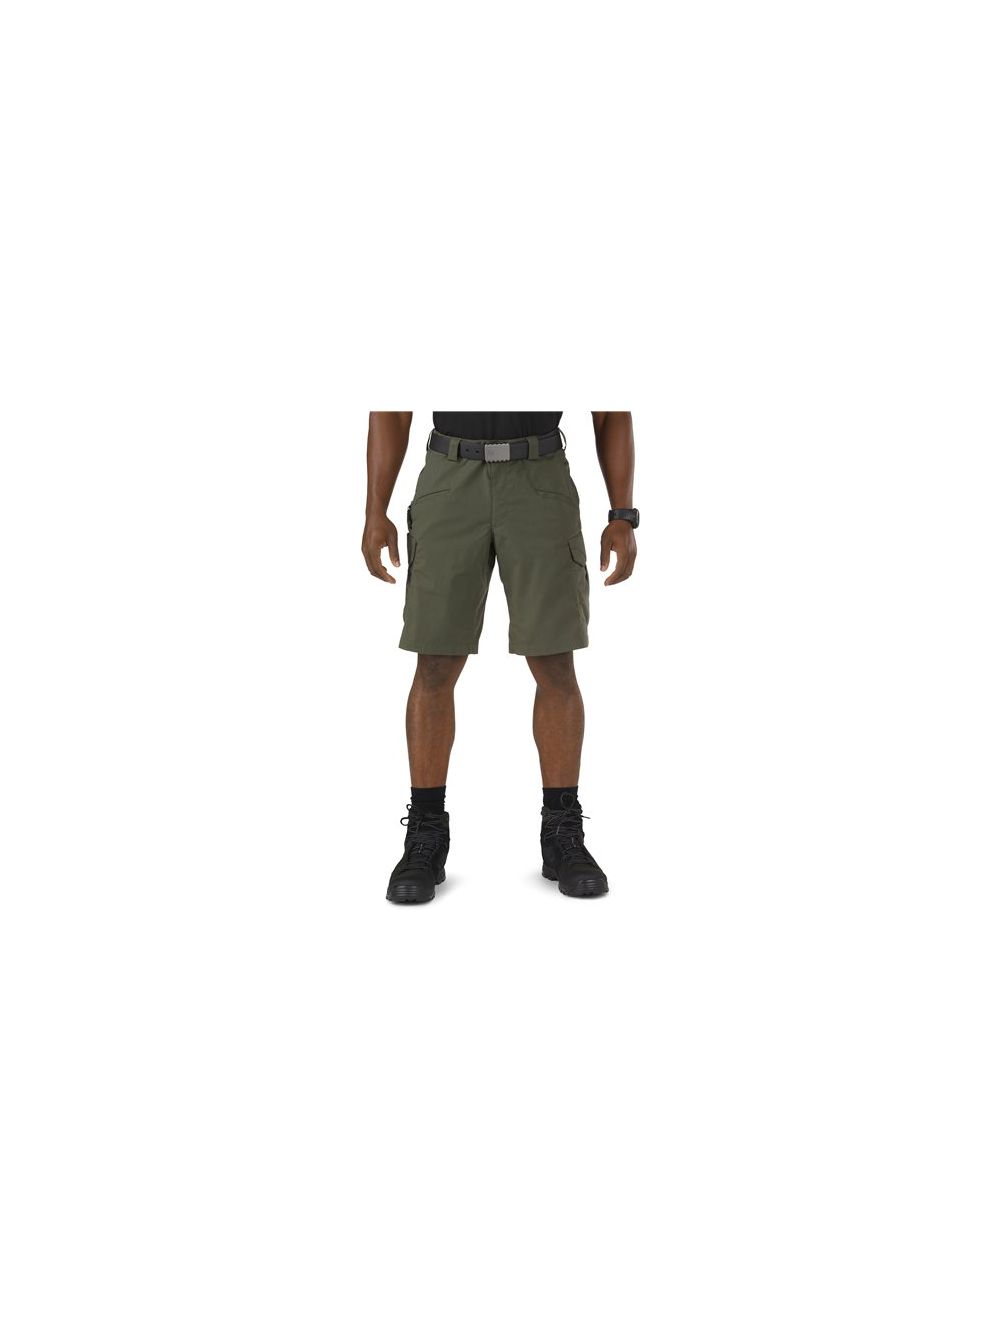 Stryke Shorts